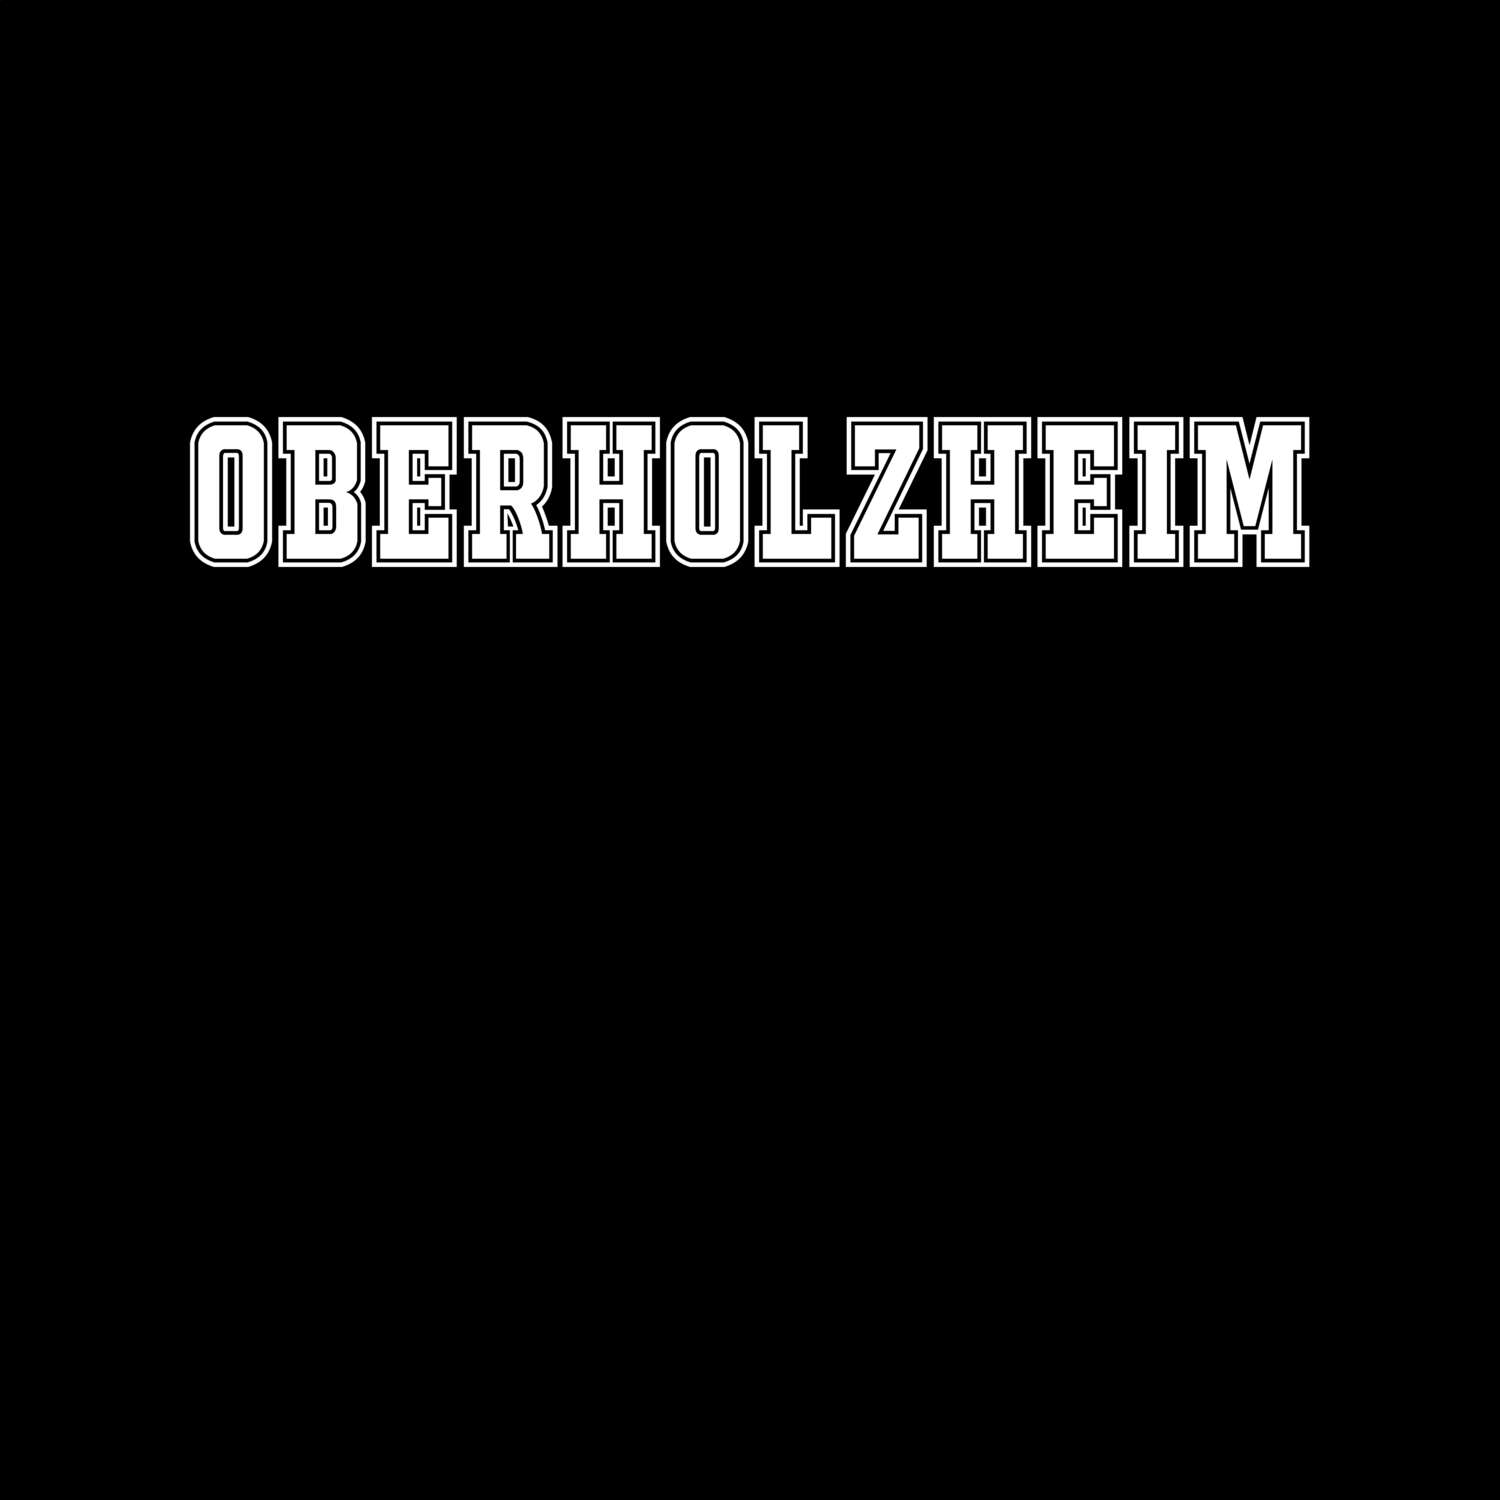 Oberholzheim T-Shirt »Classic«